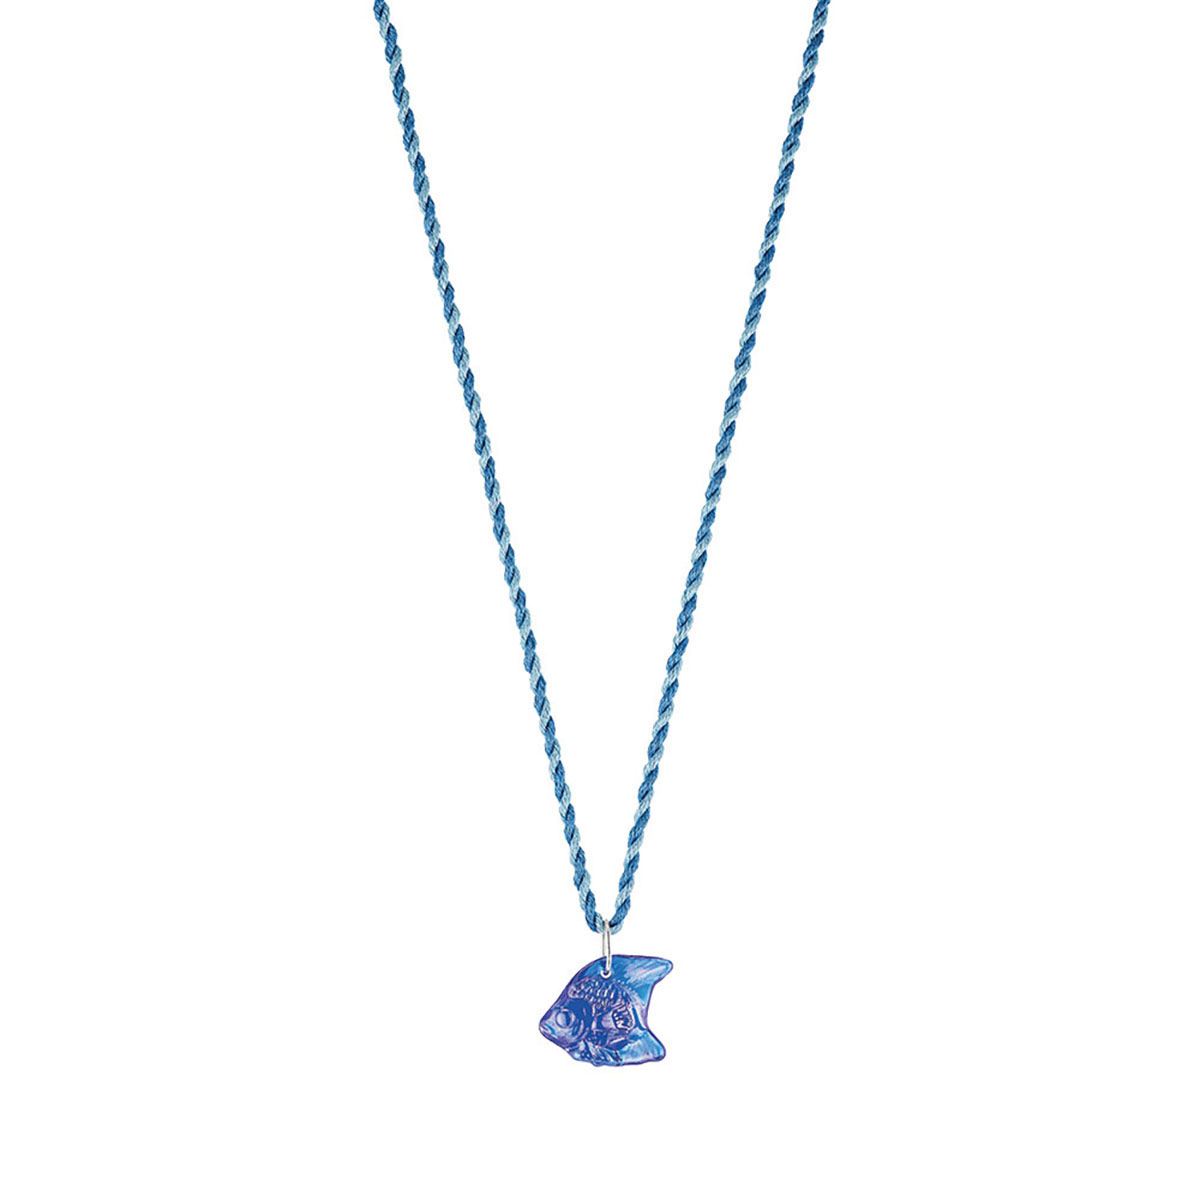 Lalique Poisson Fish Pendant Necklace, Blue Cap-Ferrat